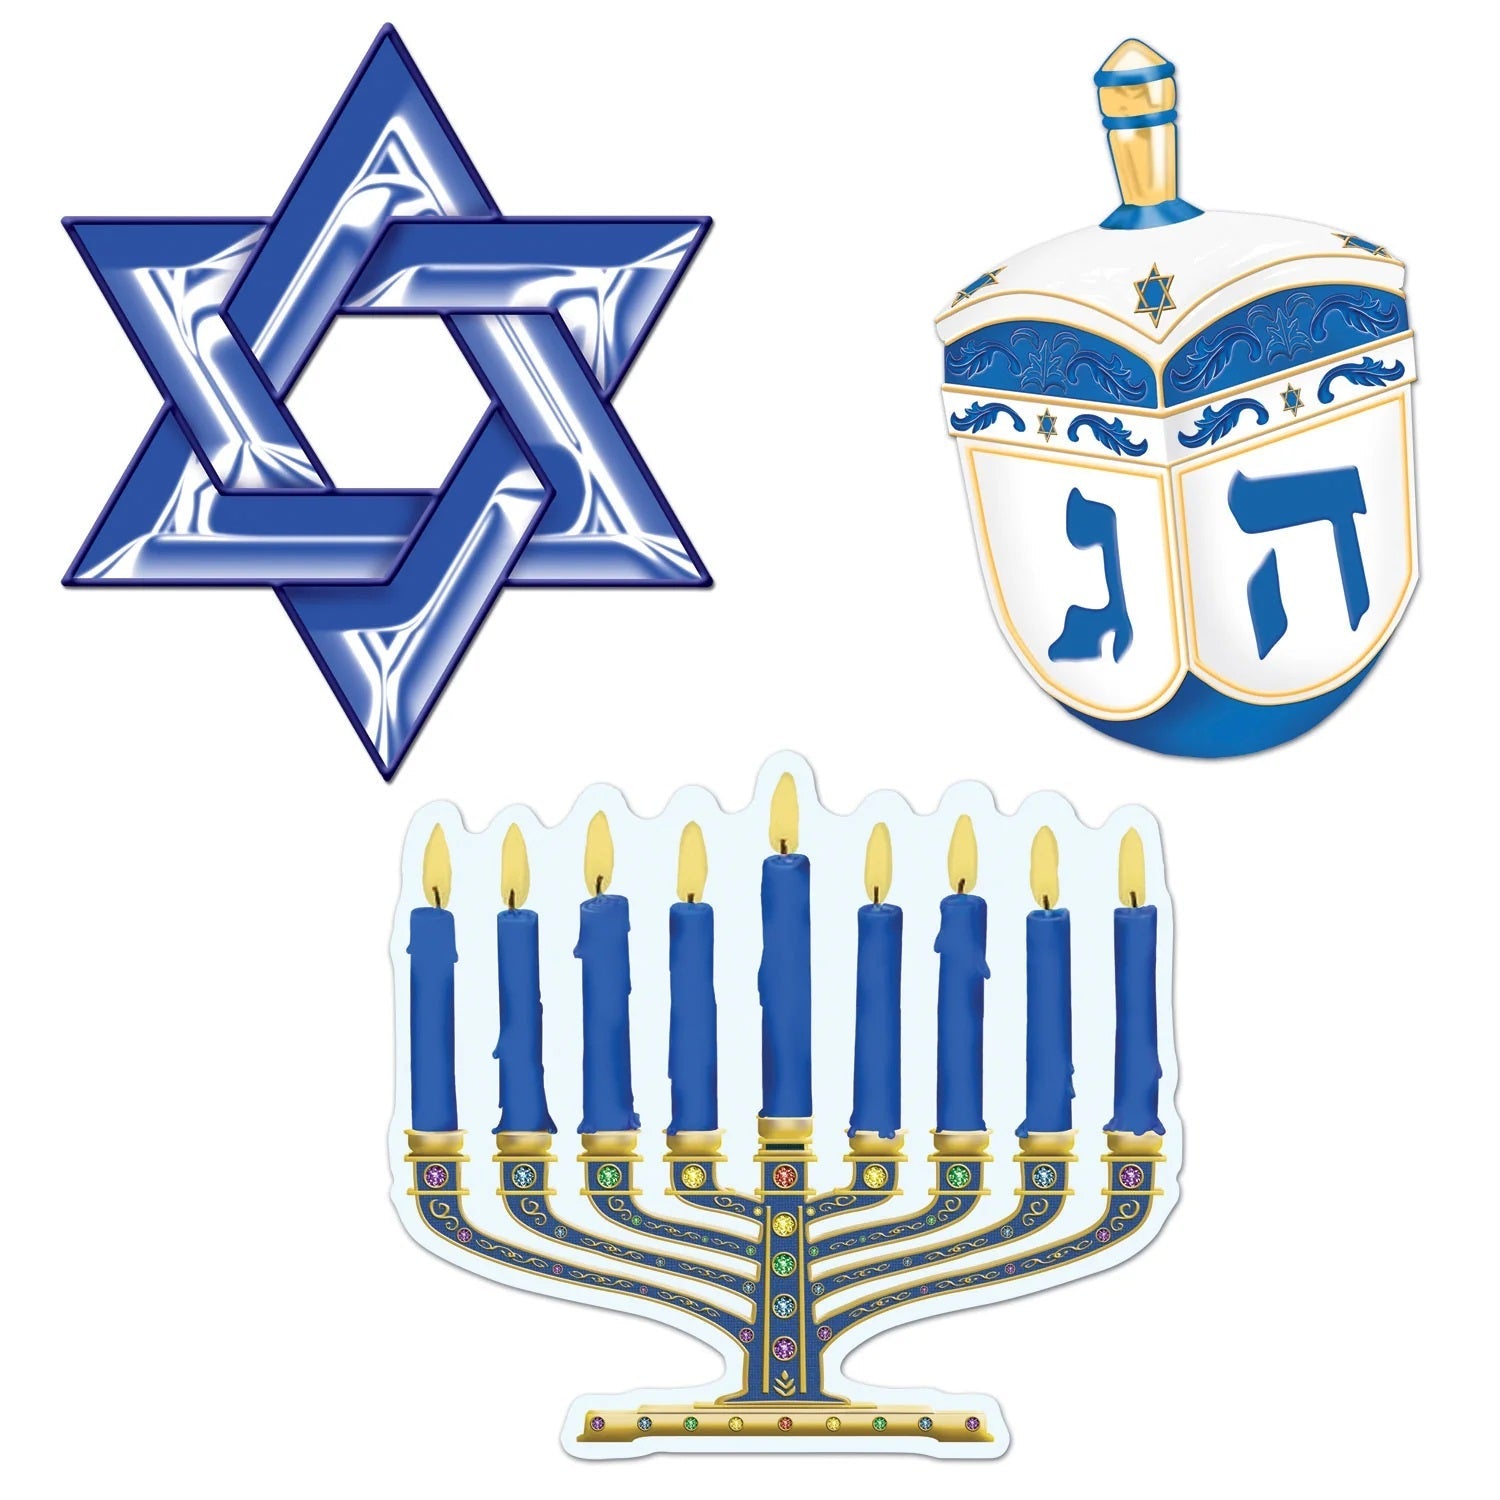 Hanukkah Party Decorations